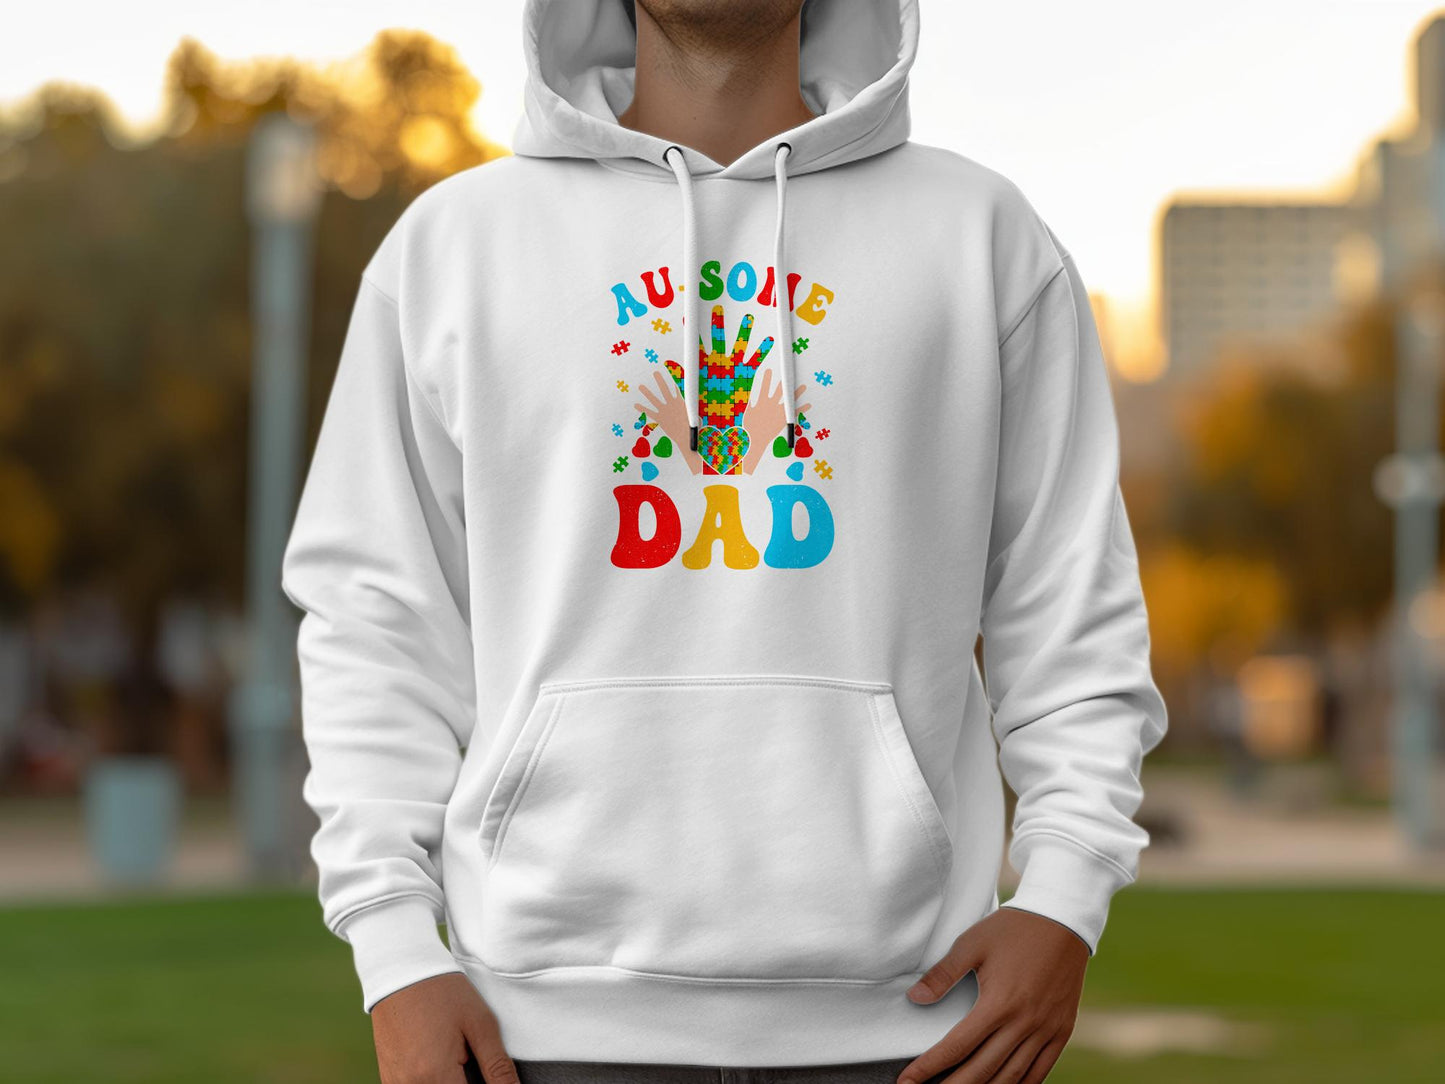 AU-Some Dad